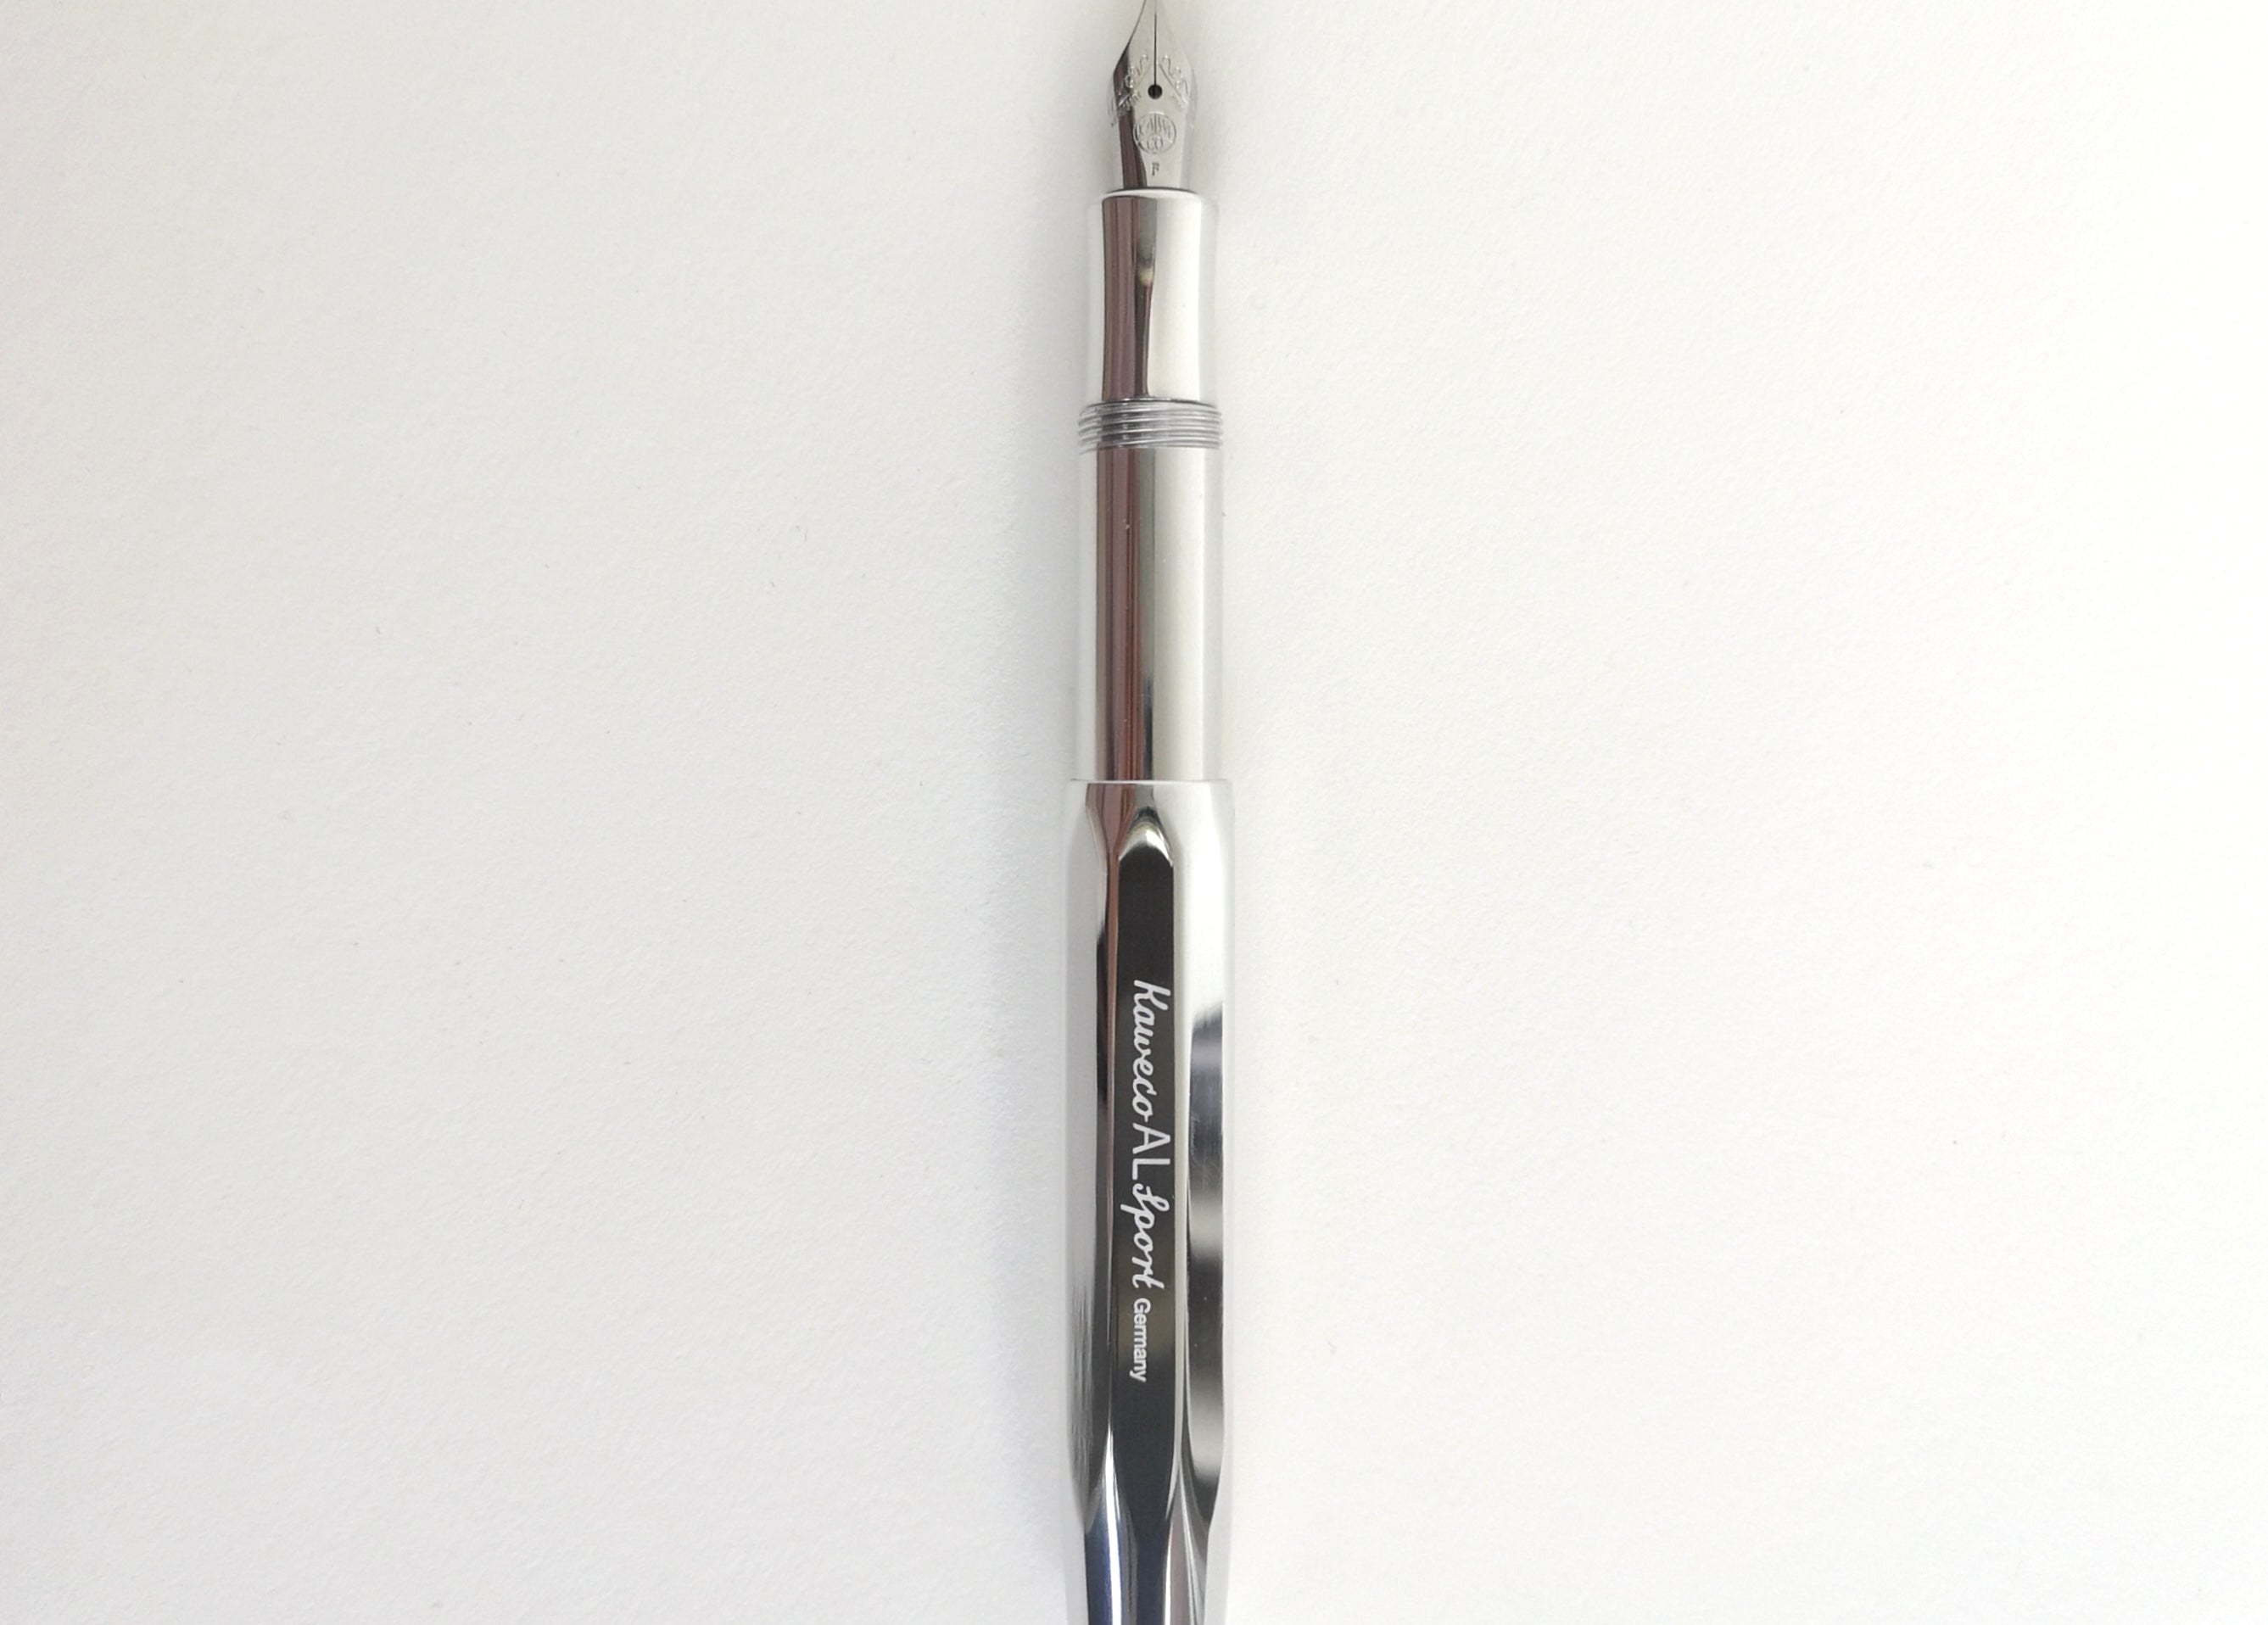 Shiny Aluminium Kaweco Sport Fountain Pen with cap posted